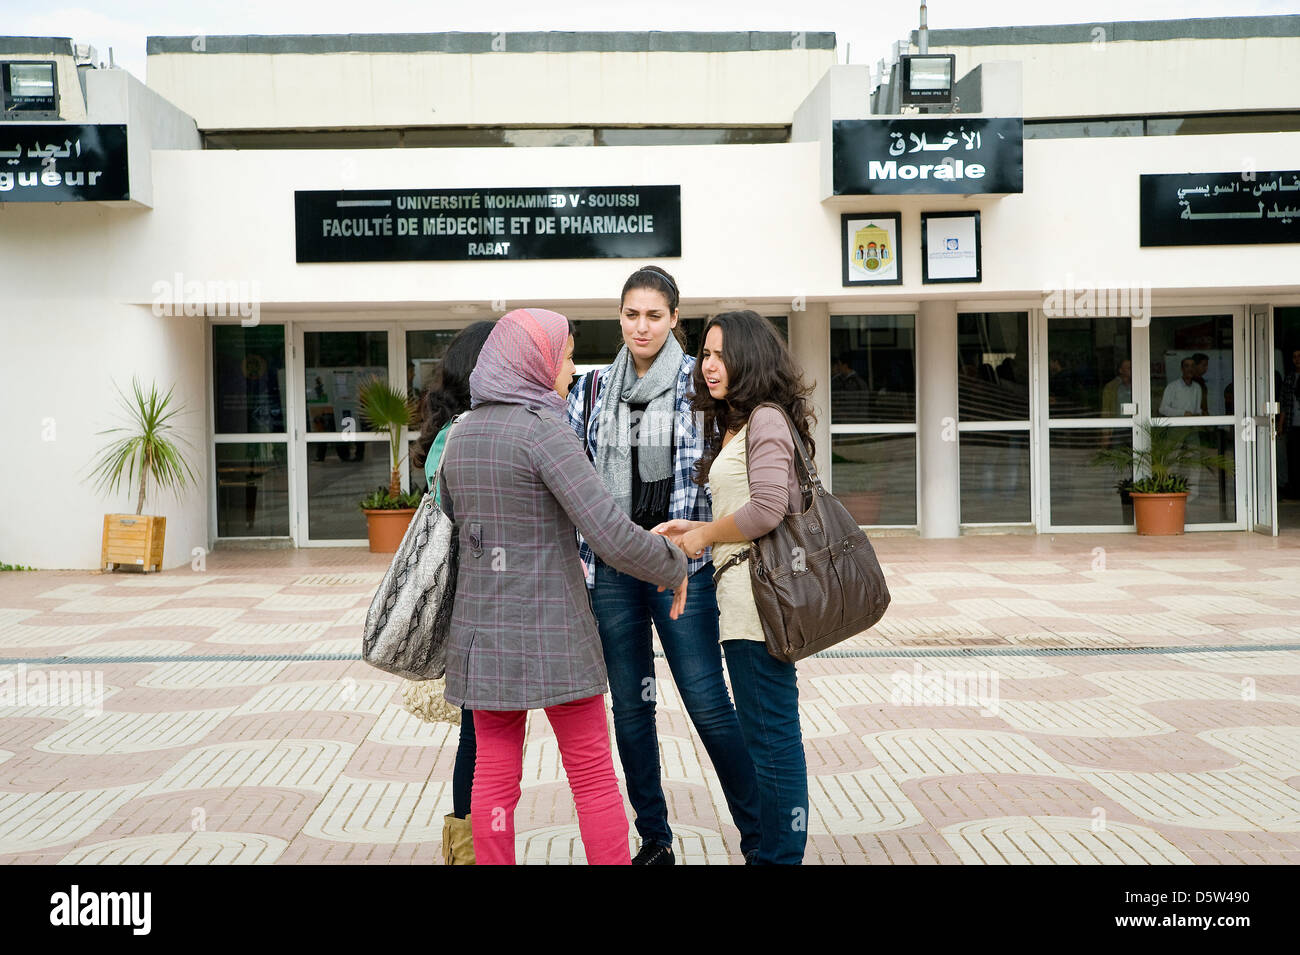 Un nouveau programme de mentorat a débuté à l'Université Mohammed V Souissi où les étudiantes peuvent obtenir des conseils pour sa vie professionnelle Banque D'Images